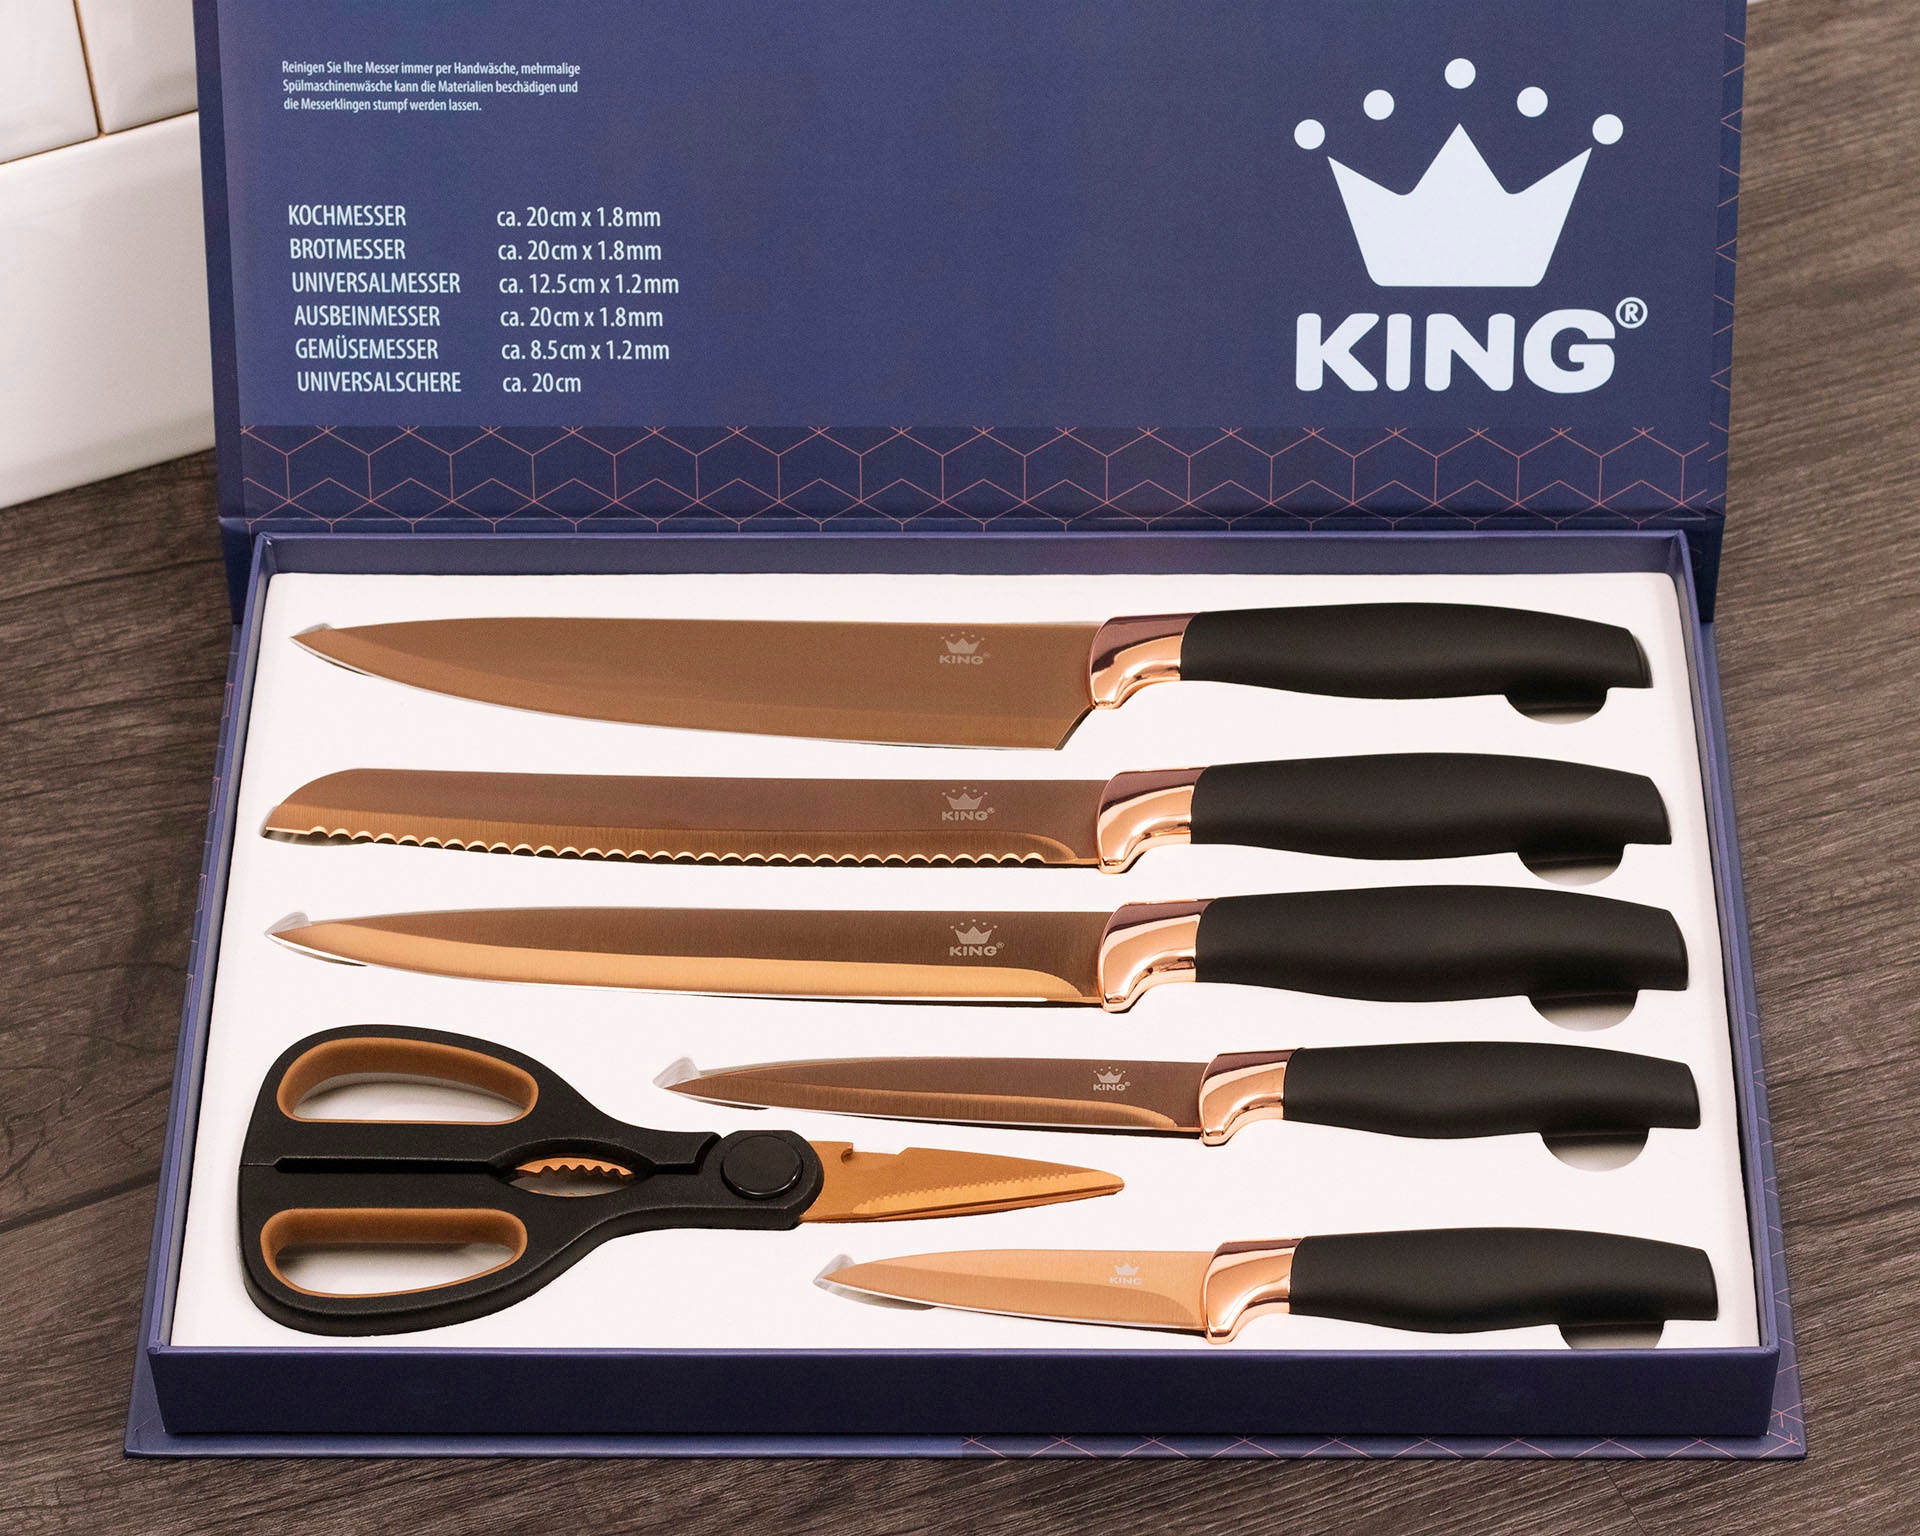 KING Messer-Set »TITANIUM ROSÉ«, (Set, 6 tlg.), 5 Küchenmesser, 1 Schere, beschichtete Messer- und Scherenklinge